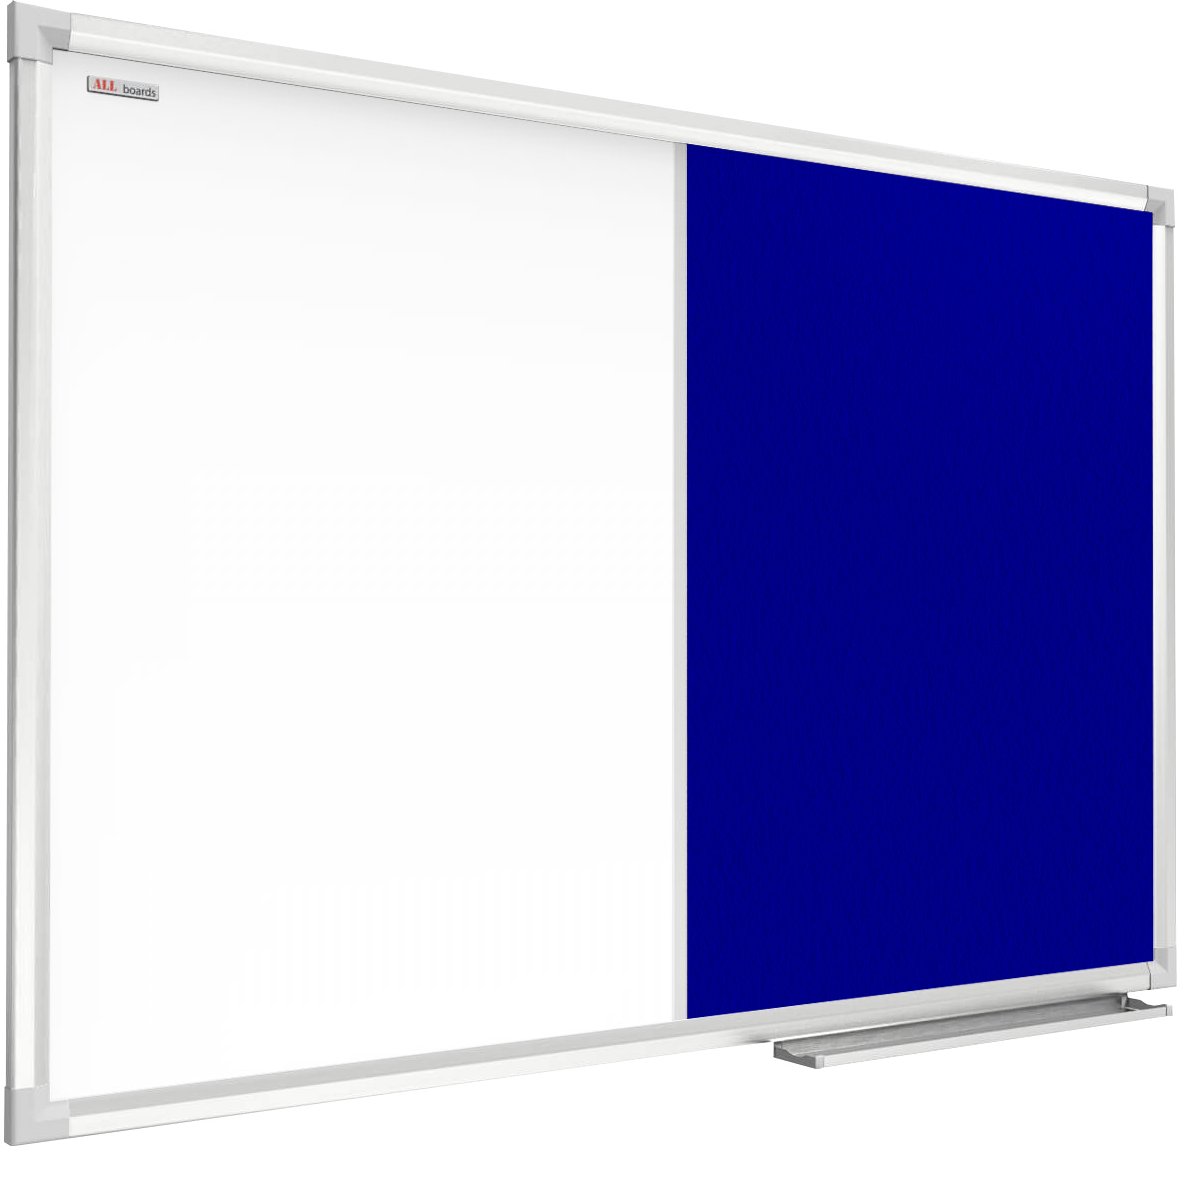 Allboards Tablica COMBI suchościeralna magnetyczna filcowa 60x40 cm niebieska rama aluminiowa CO64FN